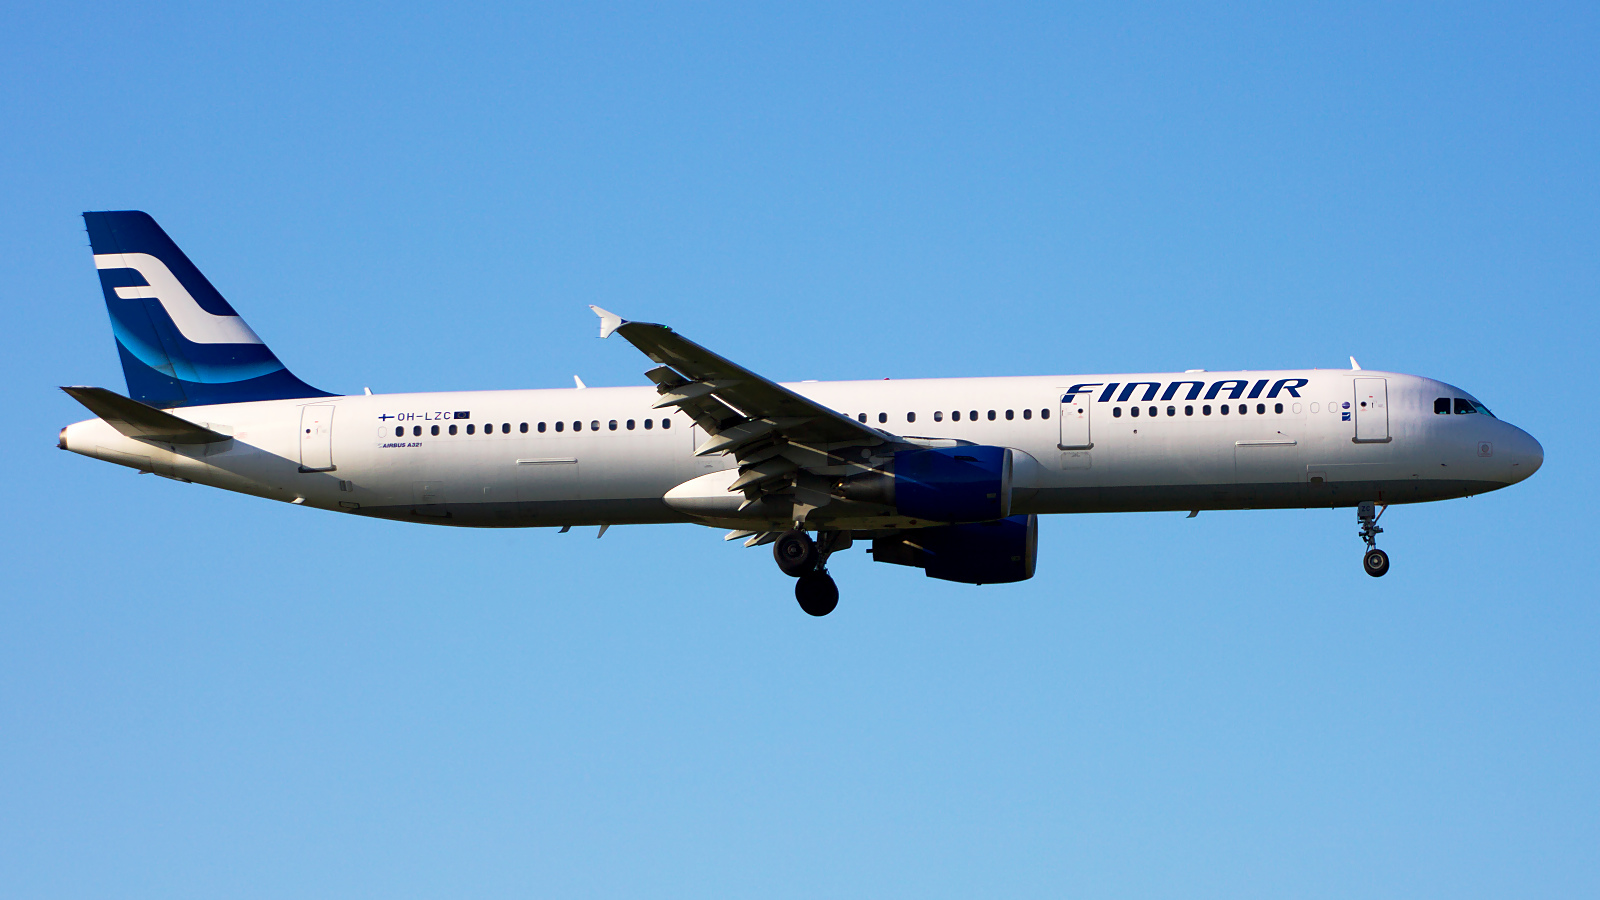 OH-LZC ✈ Finnair Airbus A321-211 @ London-Heathrow